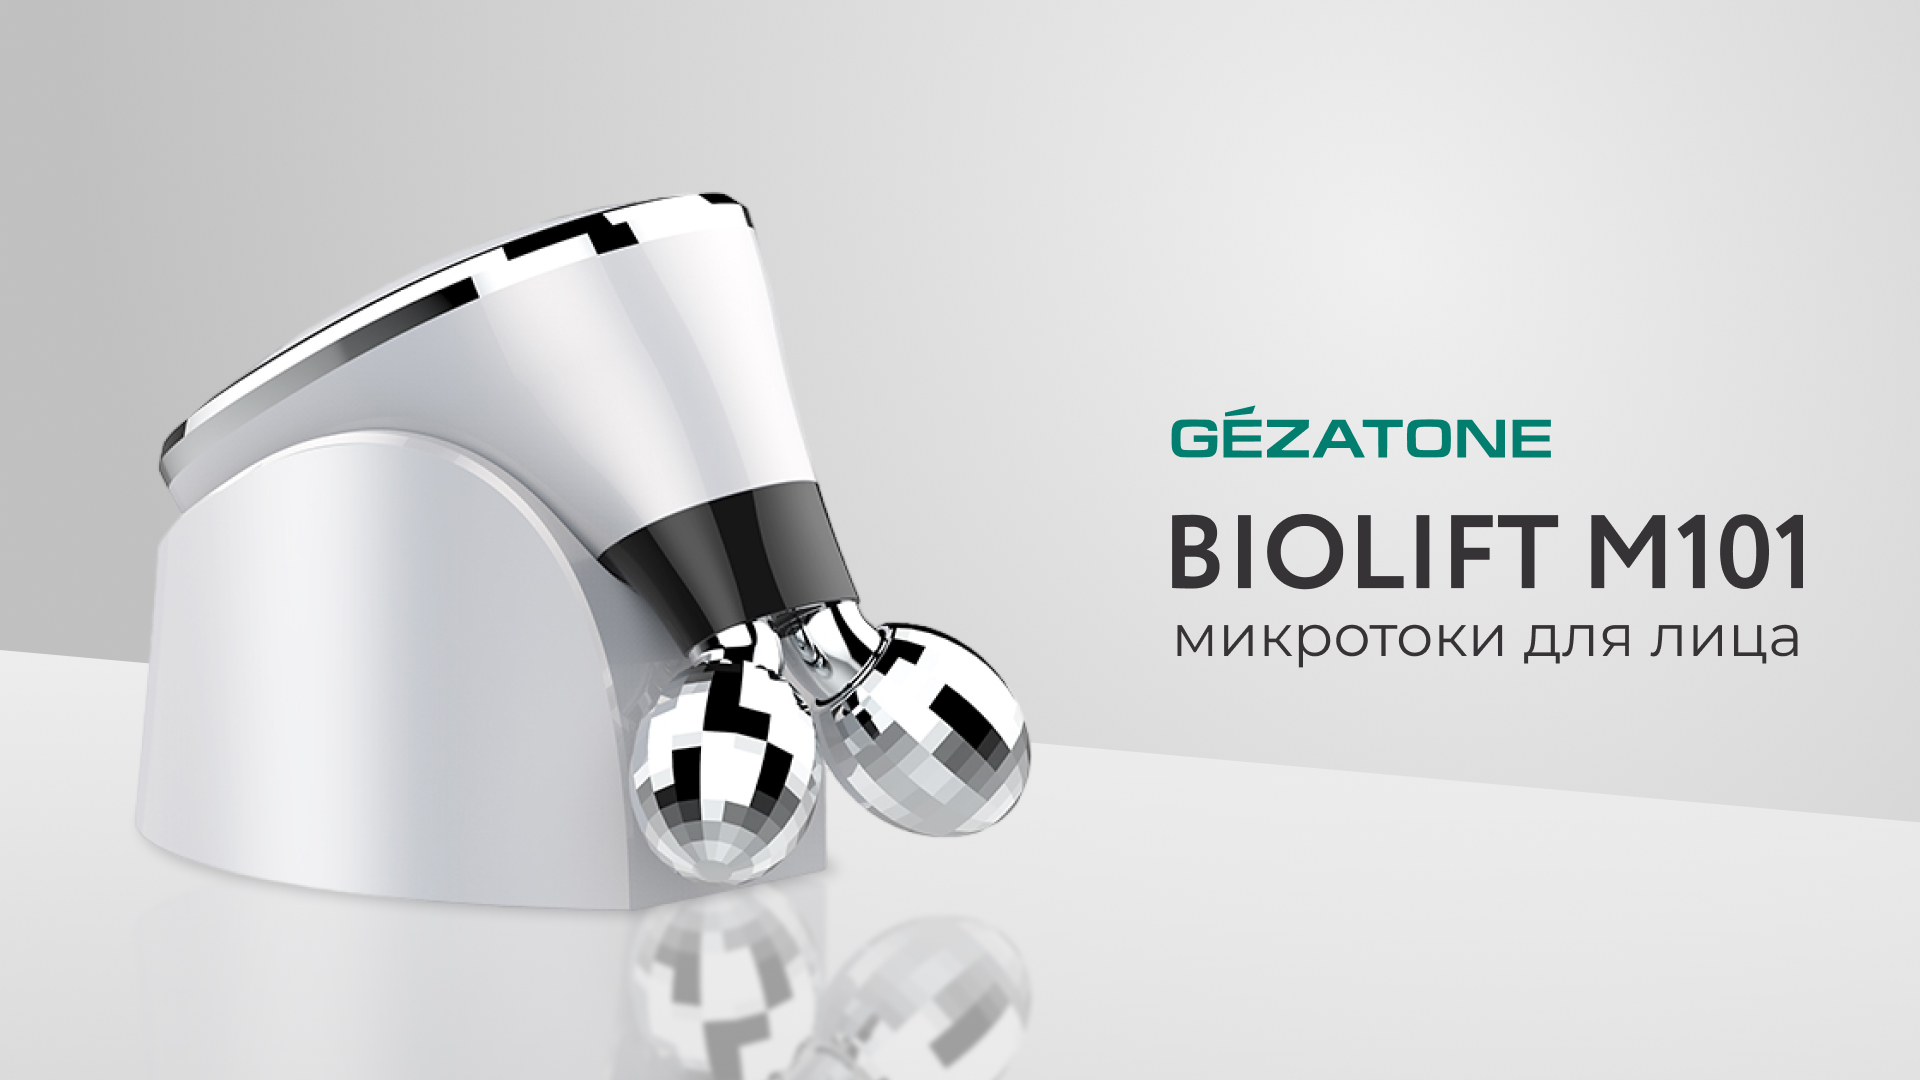 Как пользоваться массажером-миостимулятор для лица Biolift m101 от Gezatone